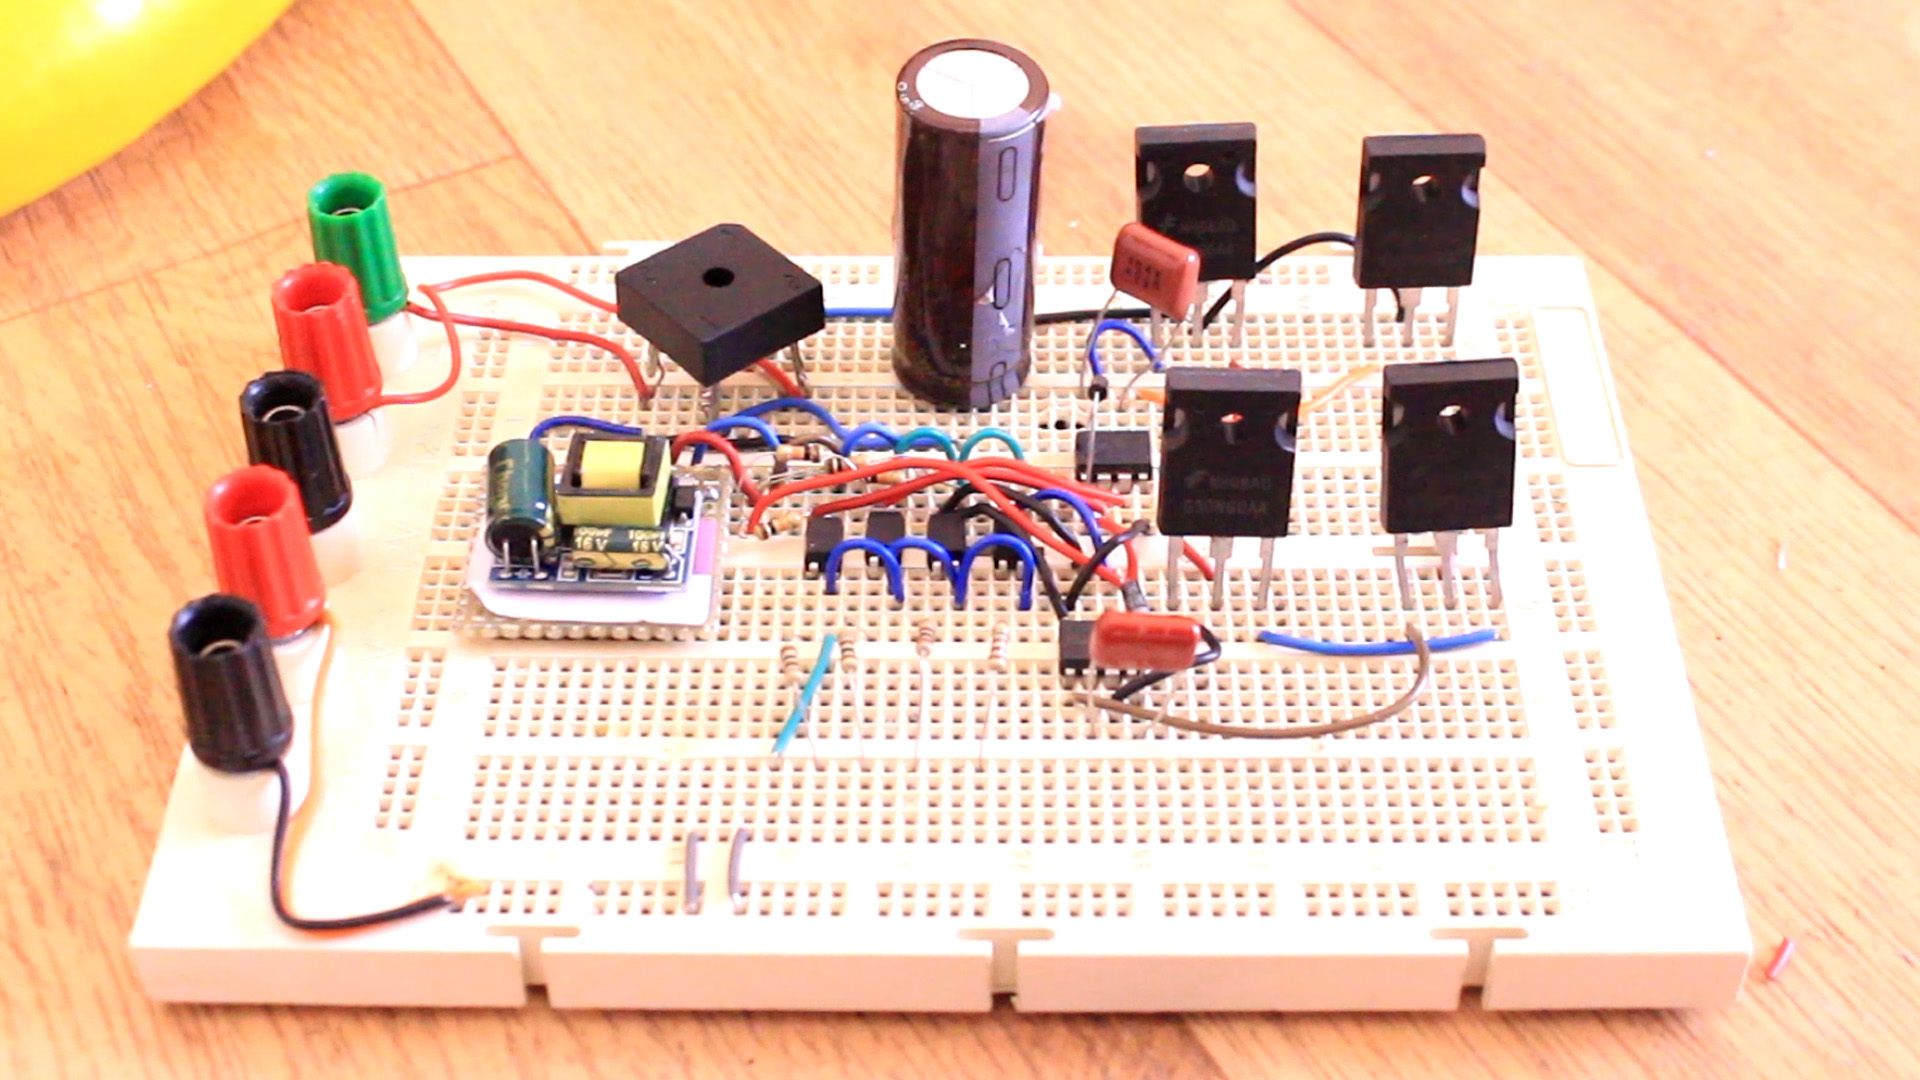 VFD schematic part list with Arduino